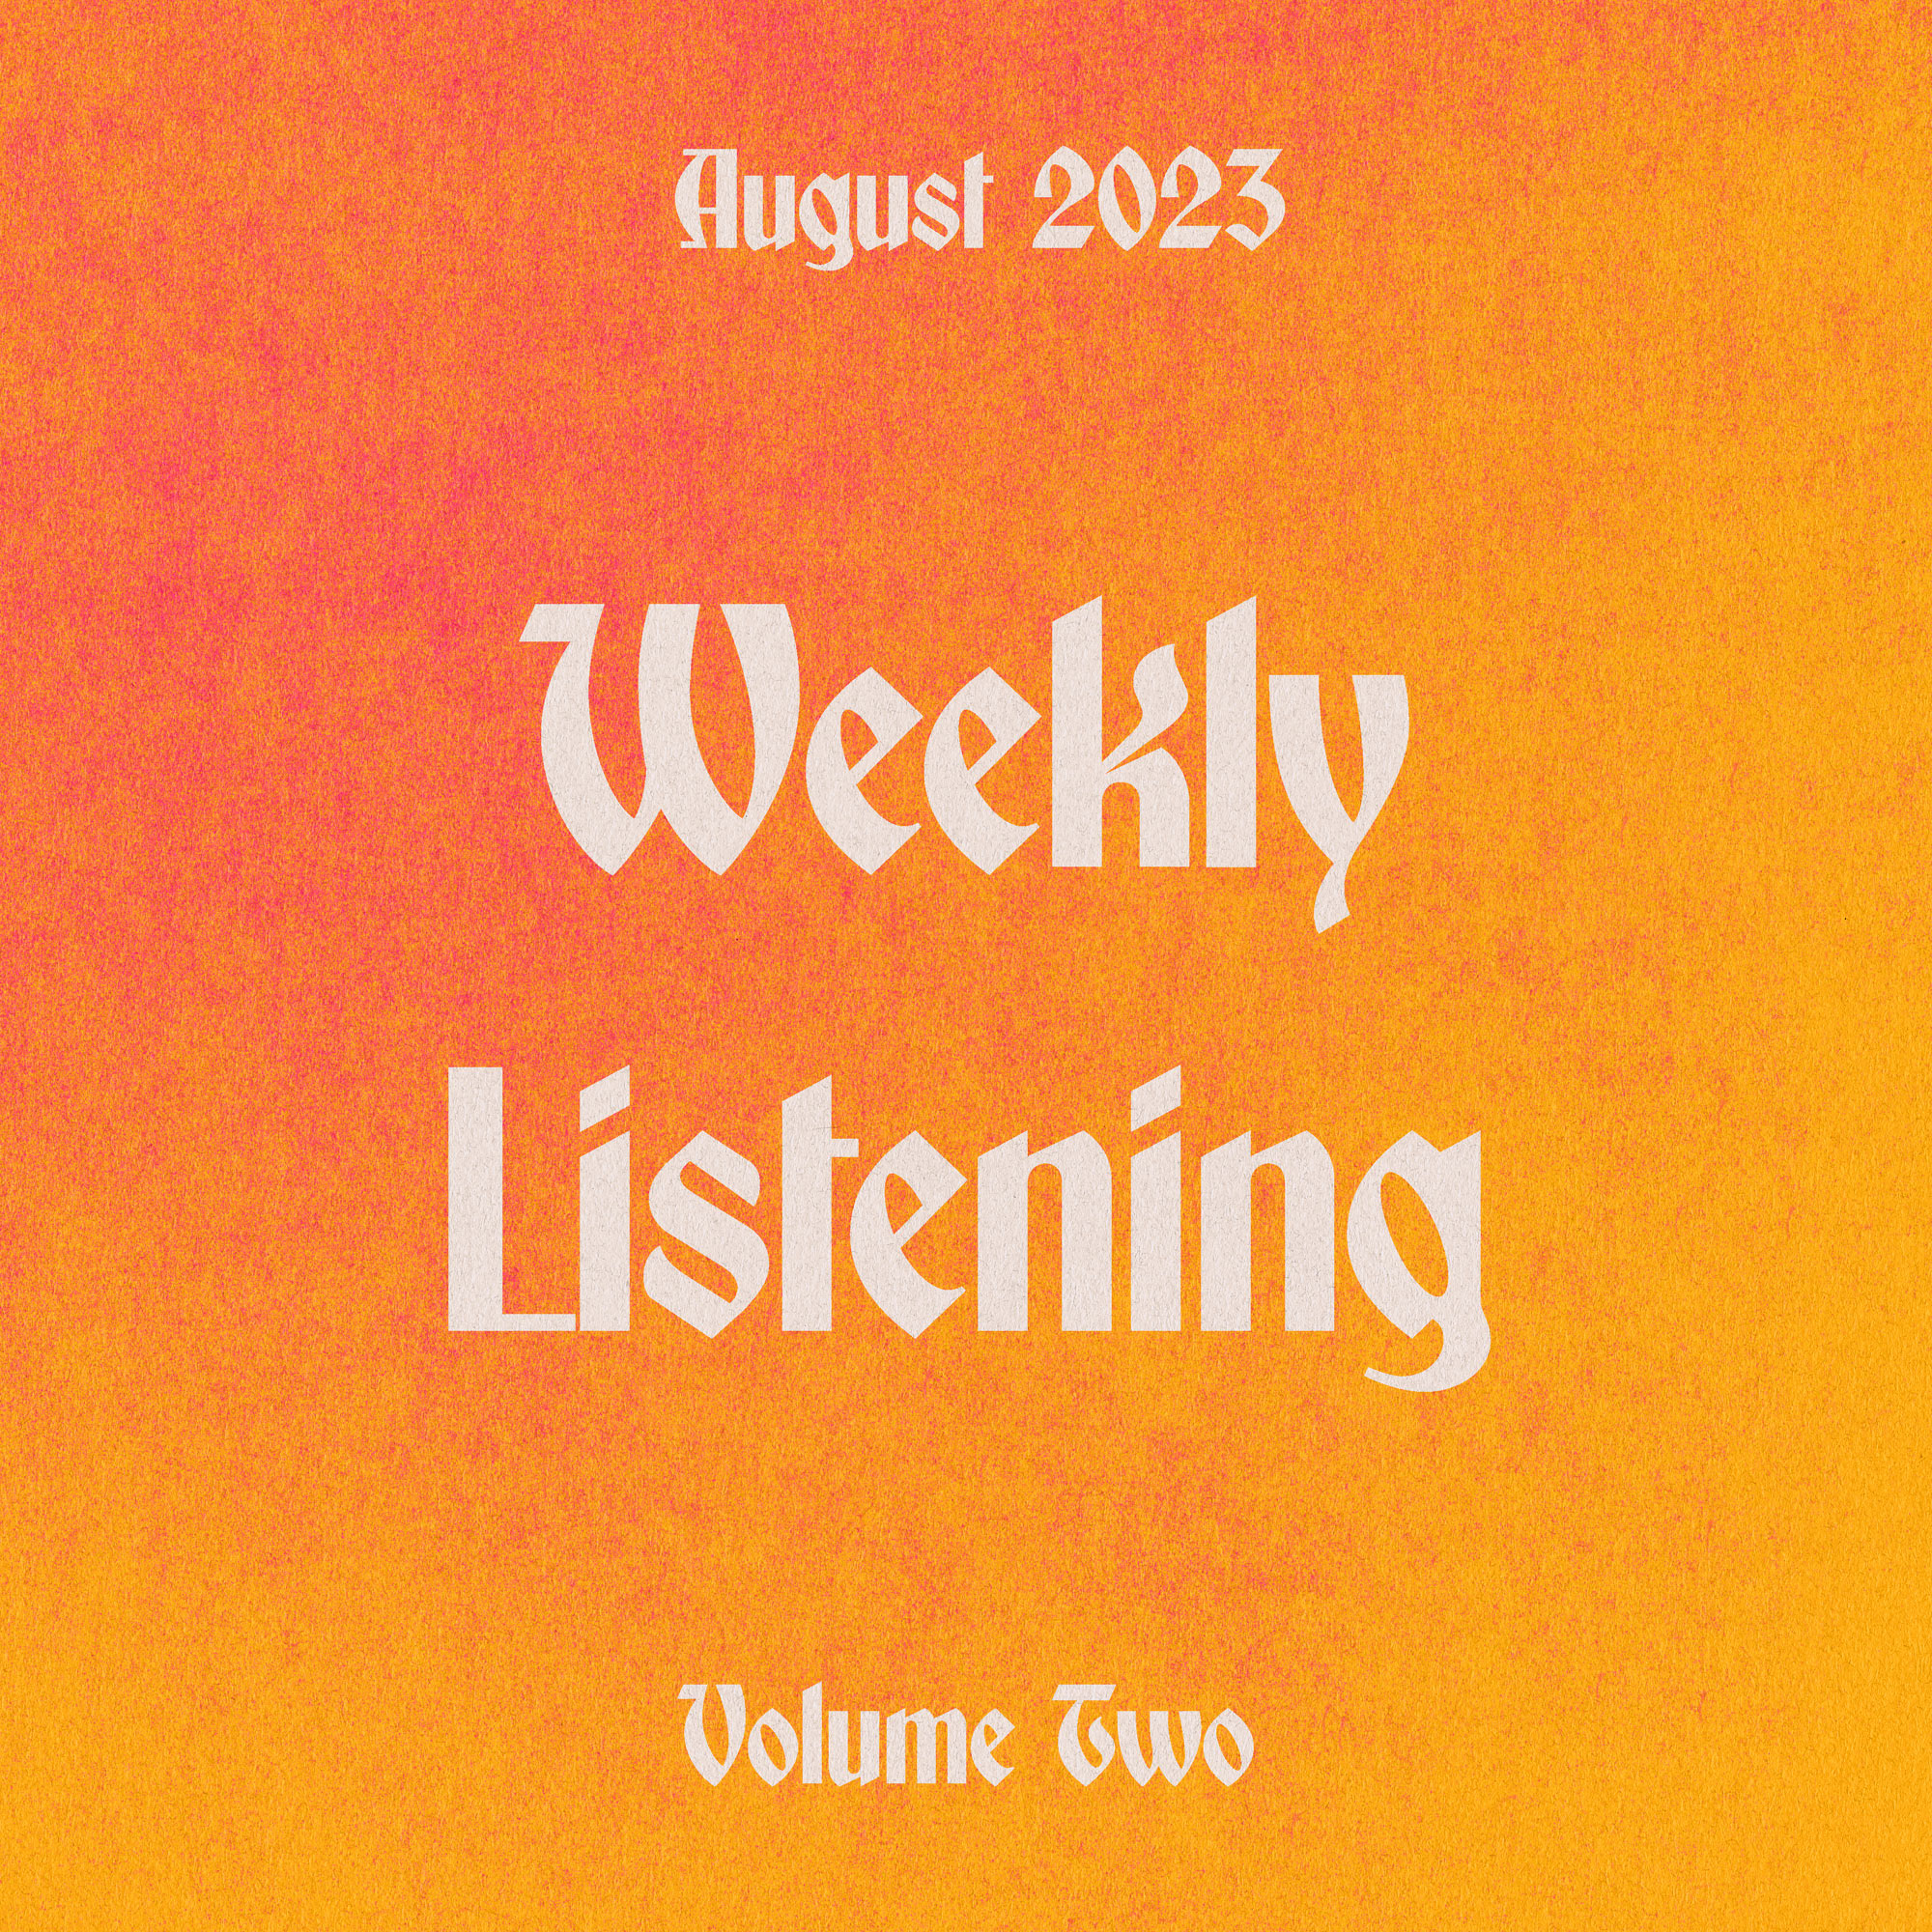 Weekly Listening August 2023 volume 2